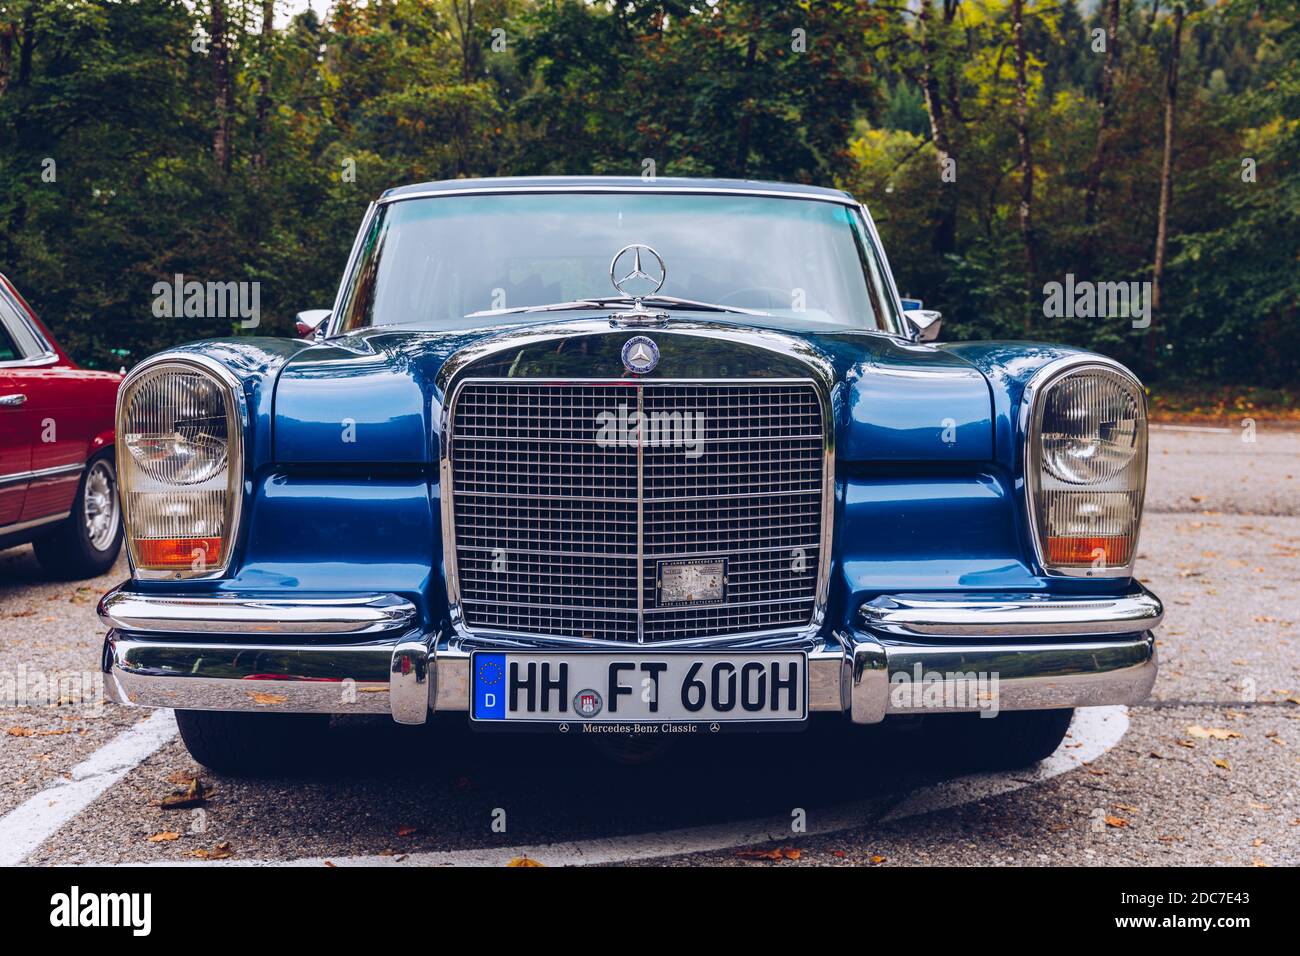 Bayern, Deutschland - 22. September 2018: Vorderansicht des alten blauen Mercedes-Benz 600 geparkt in Bayern. Der Mercedes-Benz 600 wurde von 1963 bis 198 produziert Stockfoto